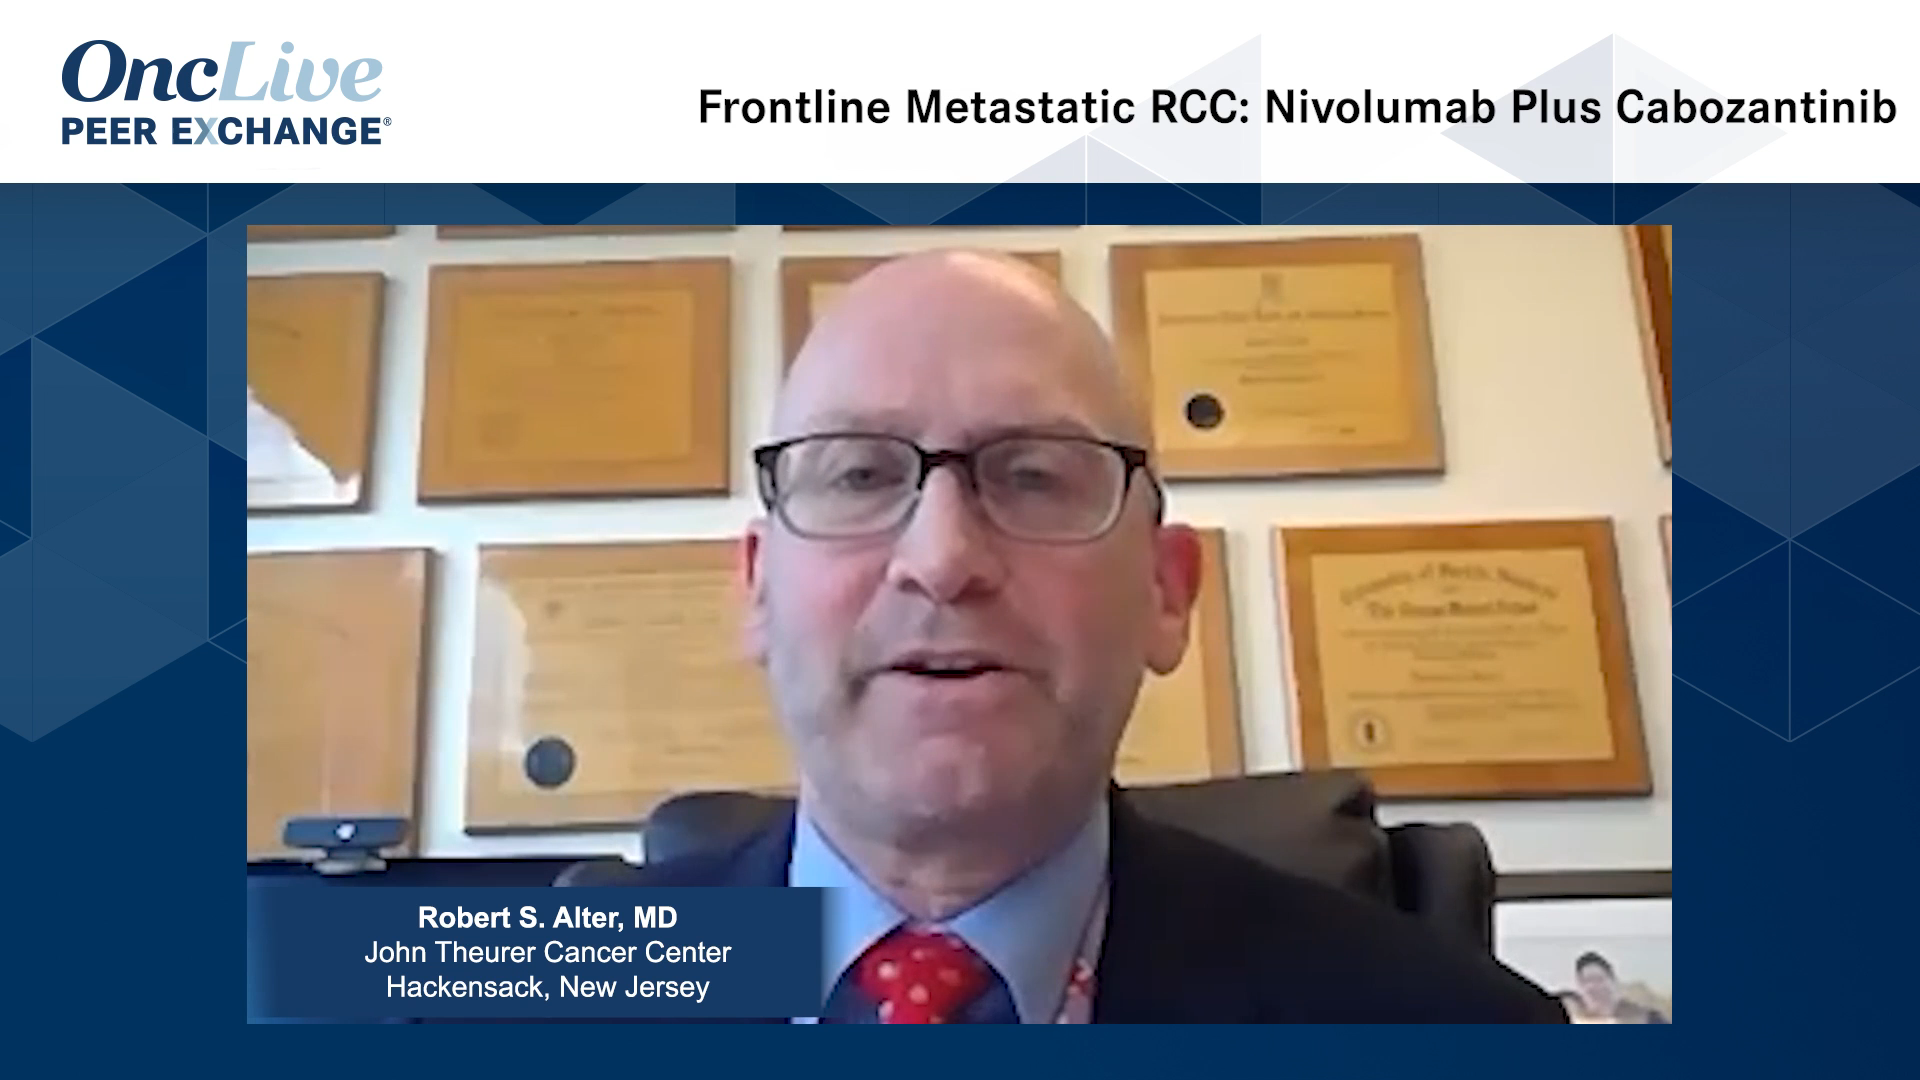 Frontline Metastatic RCC: Nivolumab Plus Cabozantinib